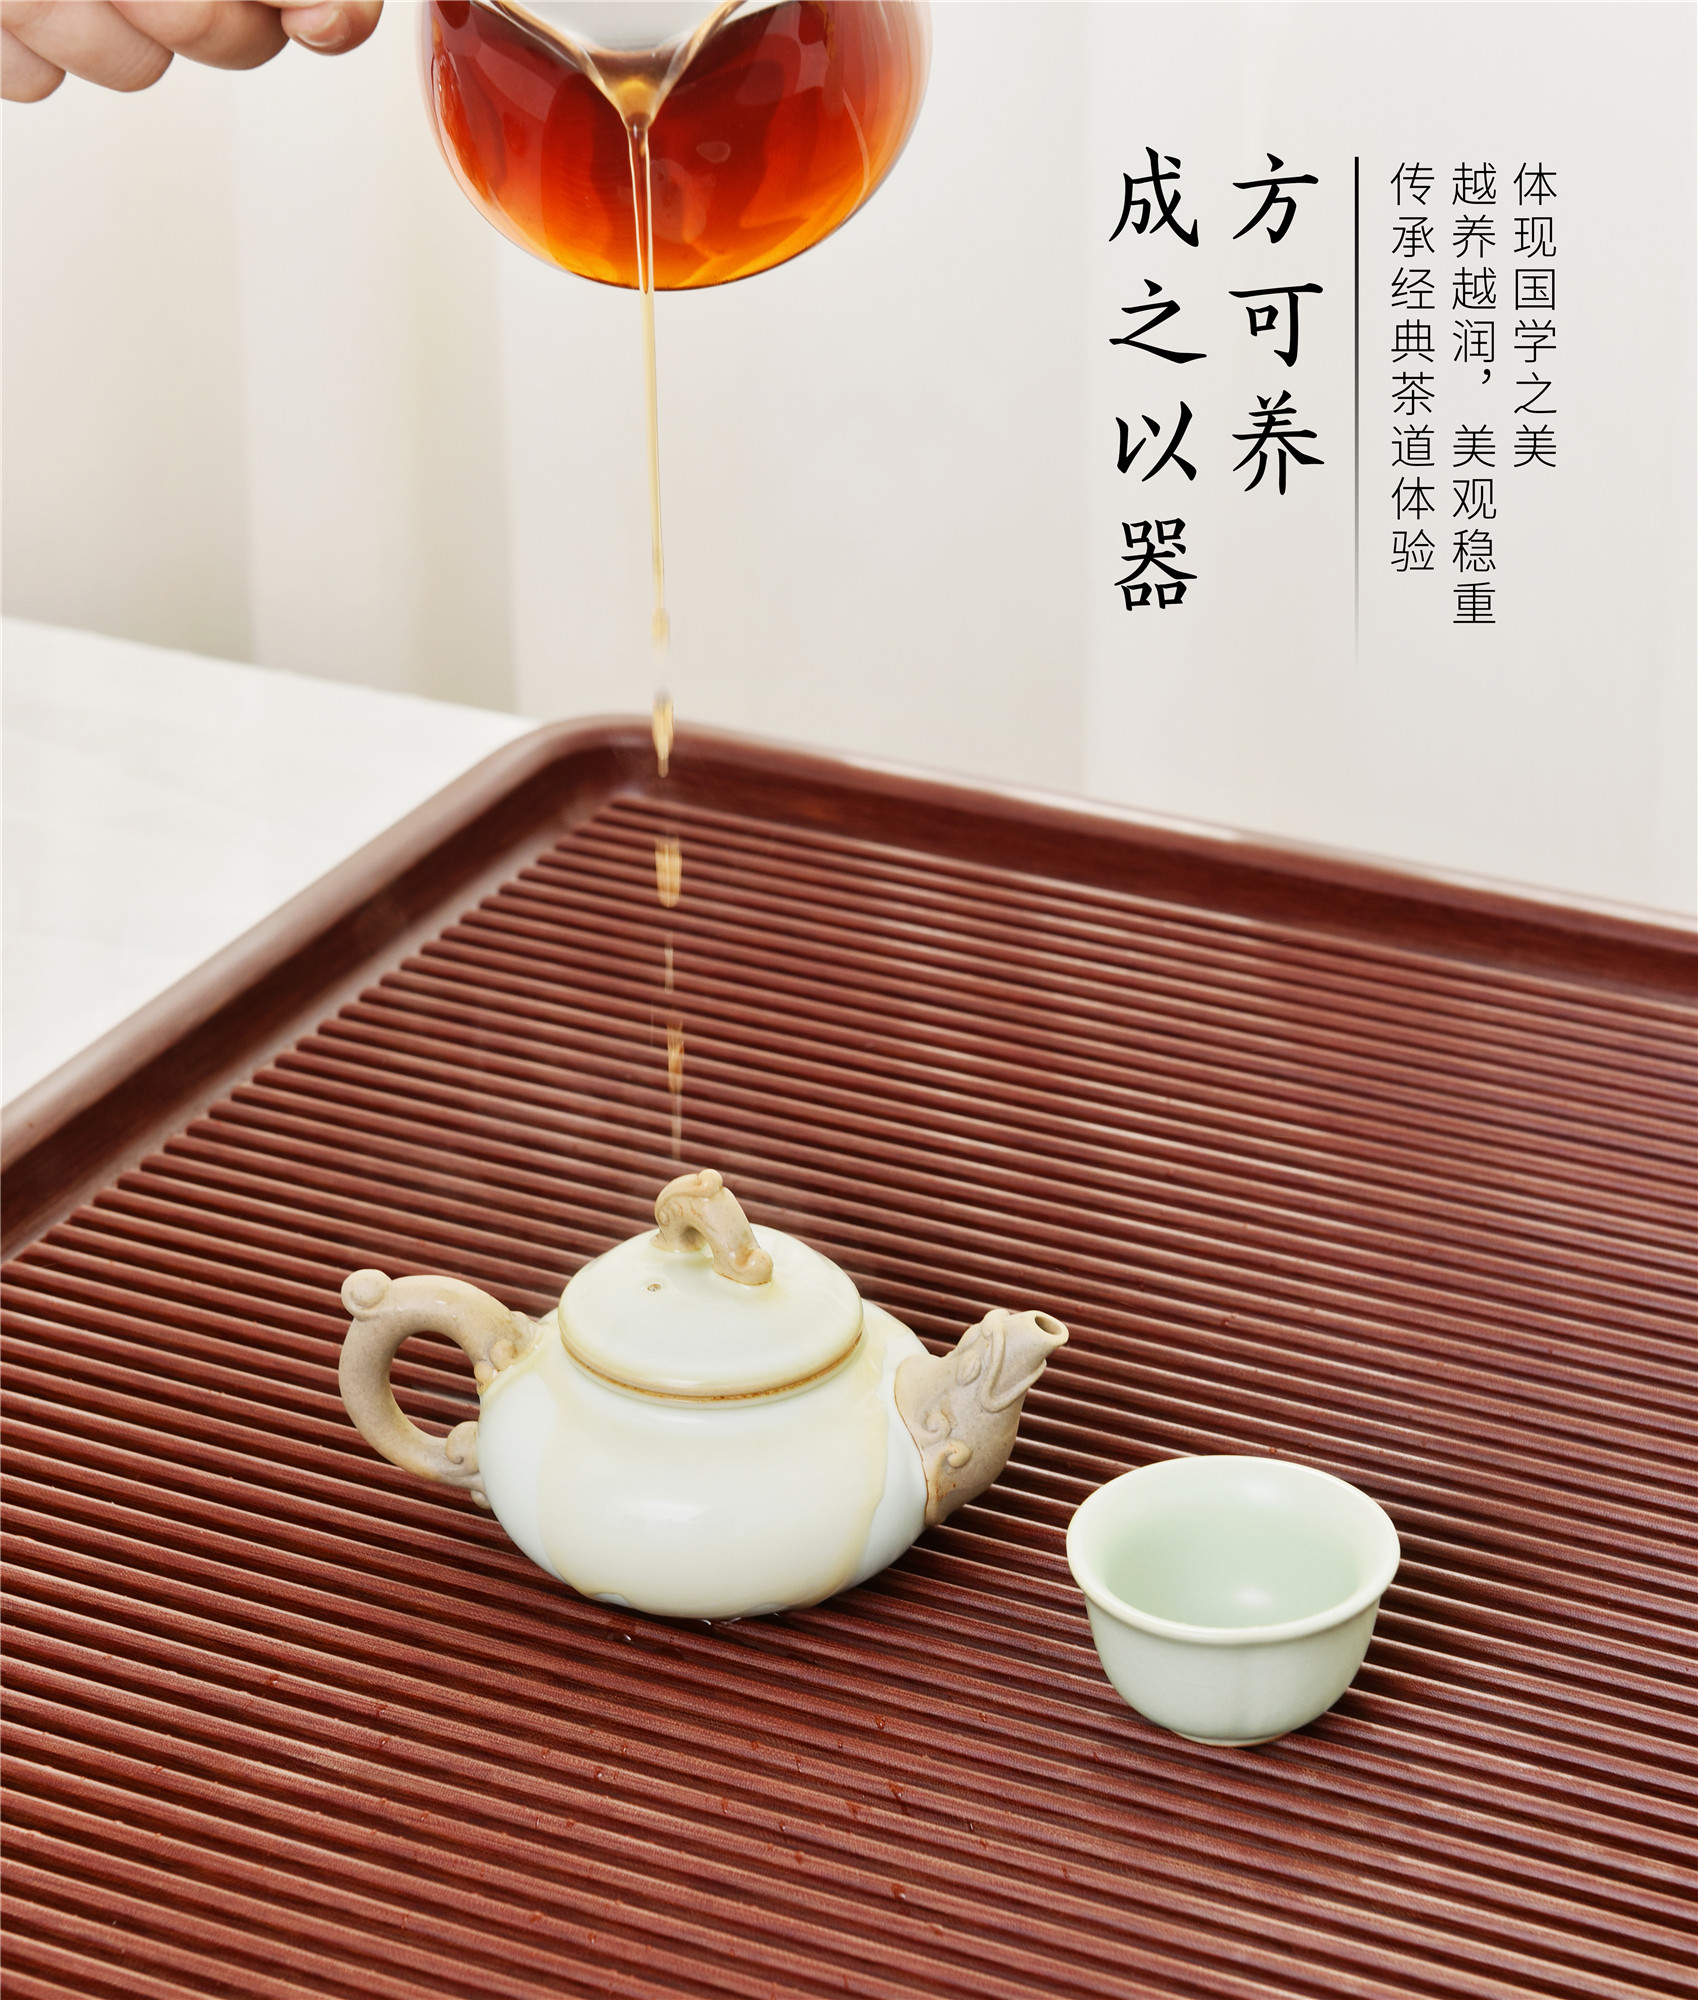 厂家直销德国电木红色茶盘高端现代家用原胚小茶台简约台湾电胶木茶具套装2